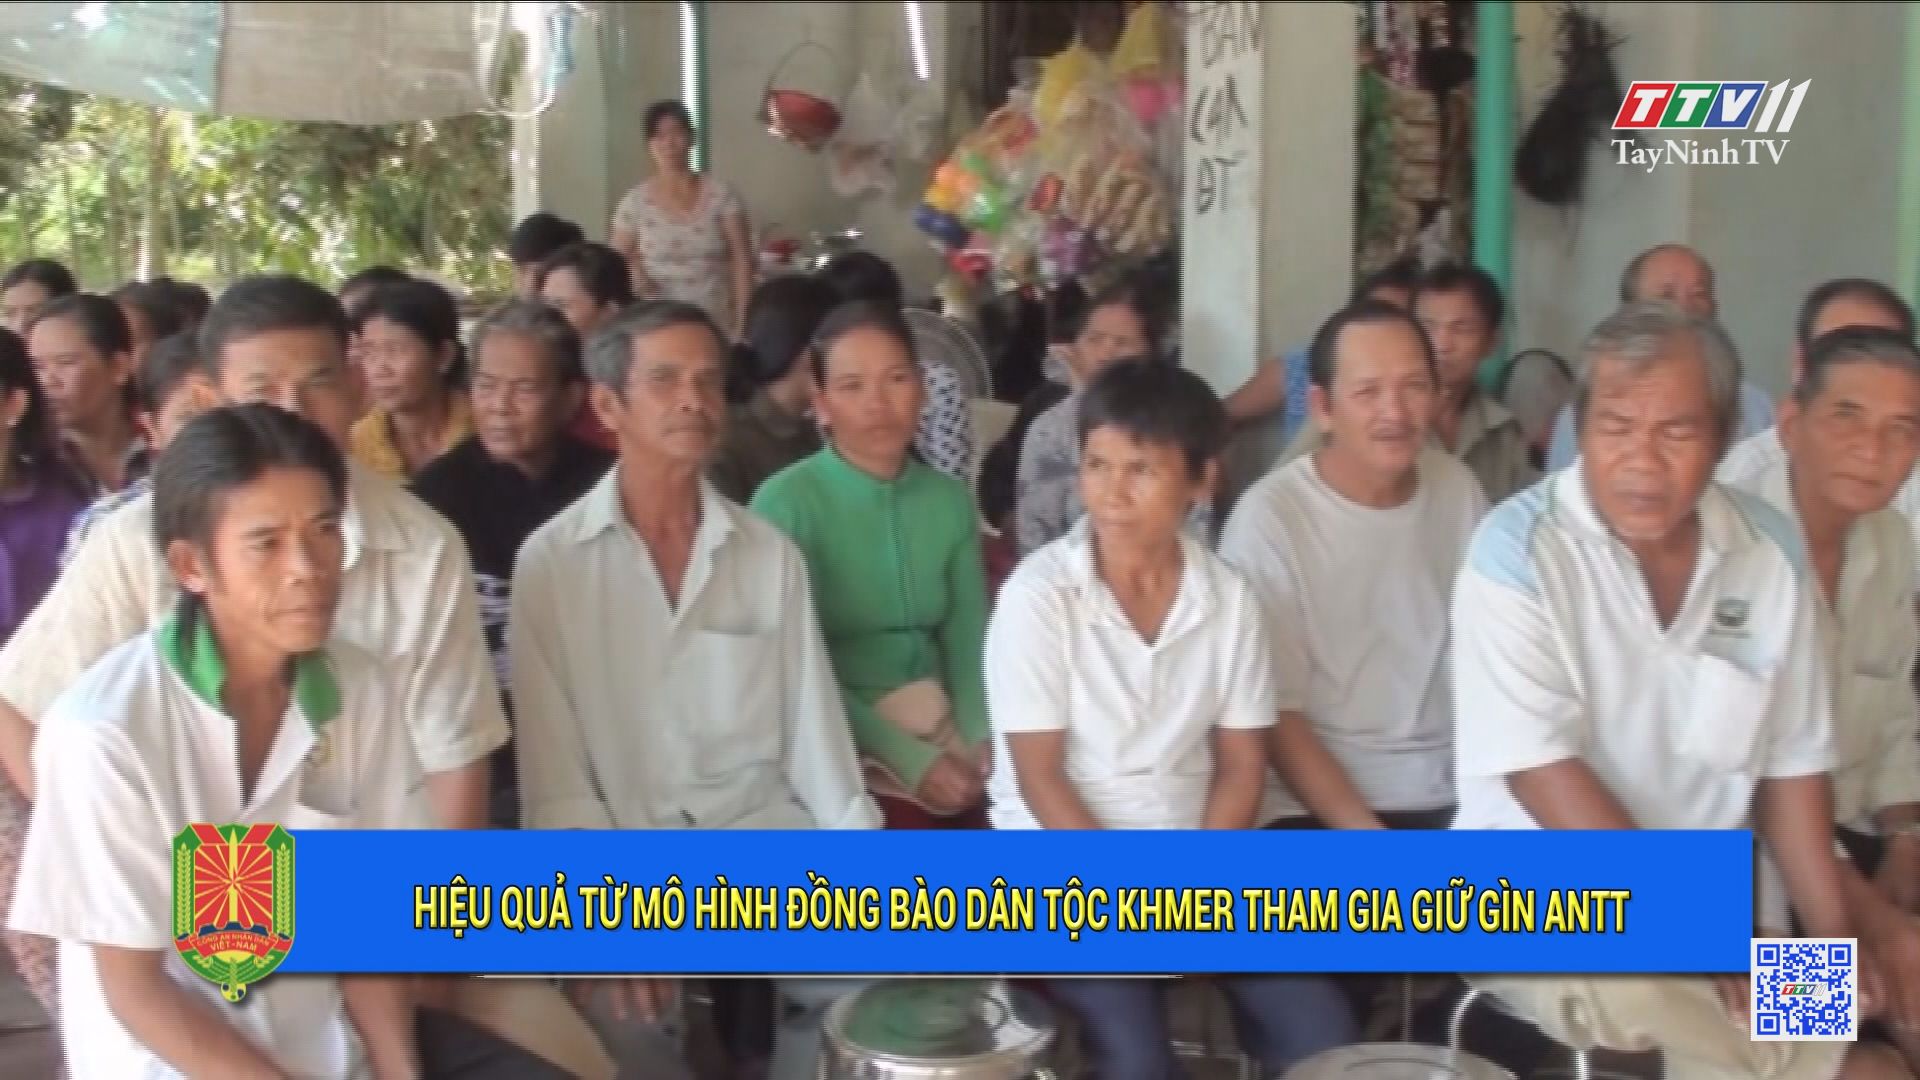 Hiệu quả từ mô hình đồng bào dân tộc Khmer tham gia giữ gìn ANTT | An ninh Tây Ninh | TayNinhTV